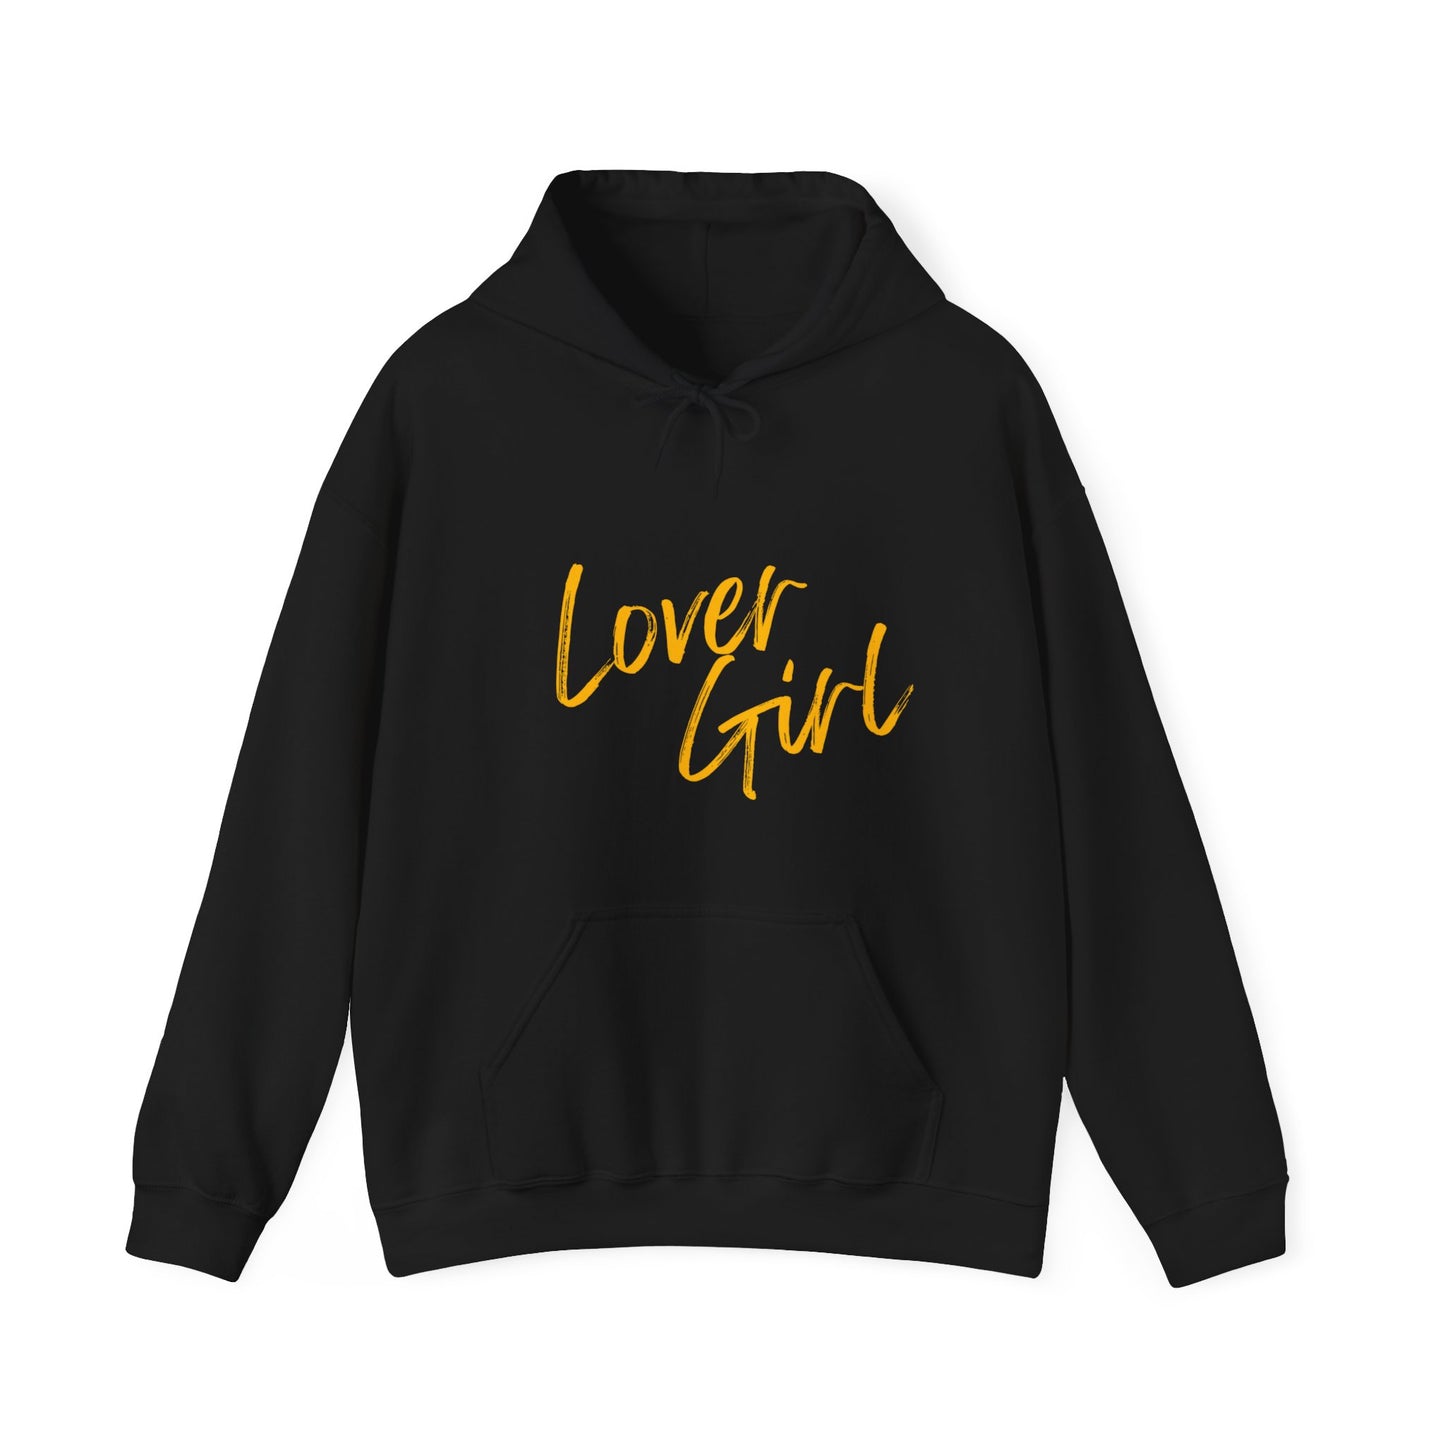 Lover girl Hooded Sweatshirt